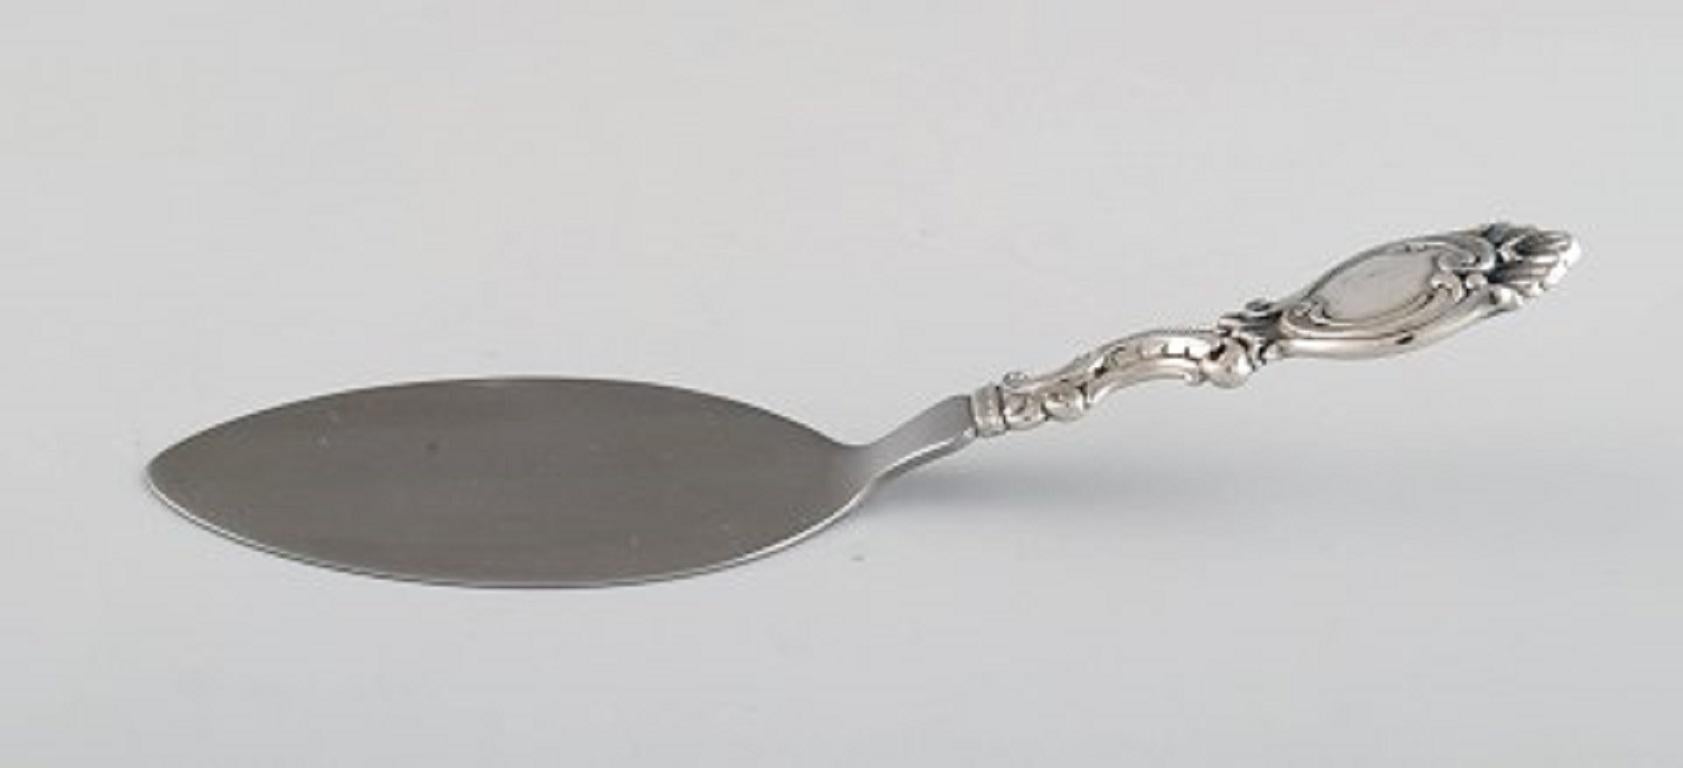 Dänischer Silberschmied. Drei Portionsteile aus Silber. Rokoko-Stil, 1940er Jahre.
Größte Maße: 22.5 cm.
In ausgezeichnetem Zustand.
Gestempelt.